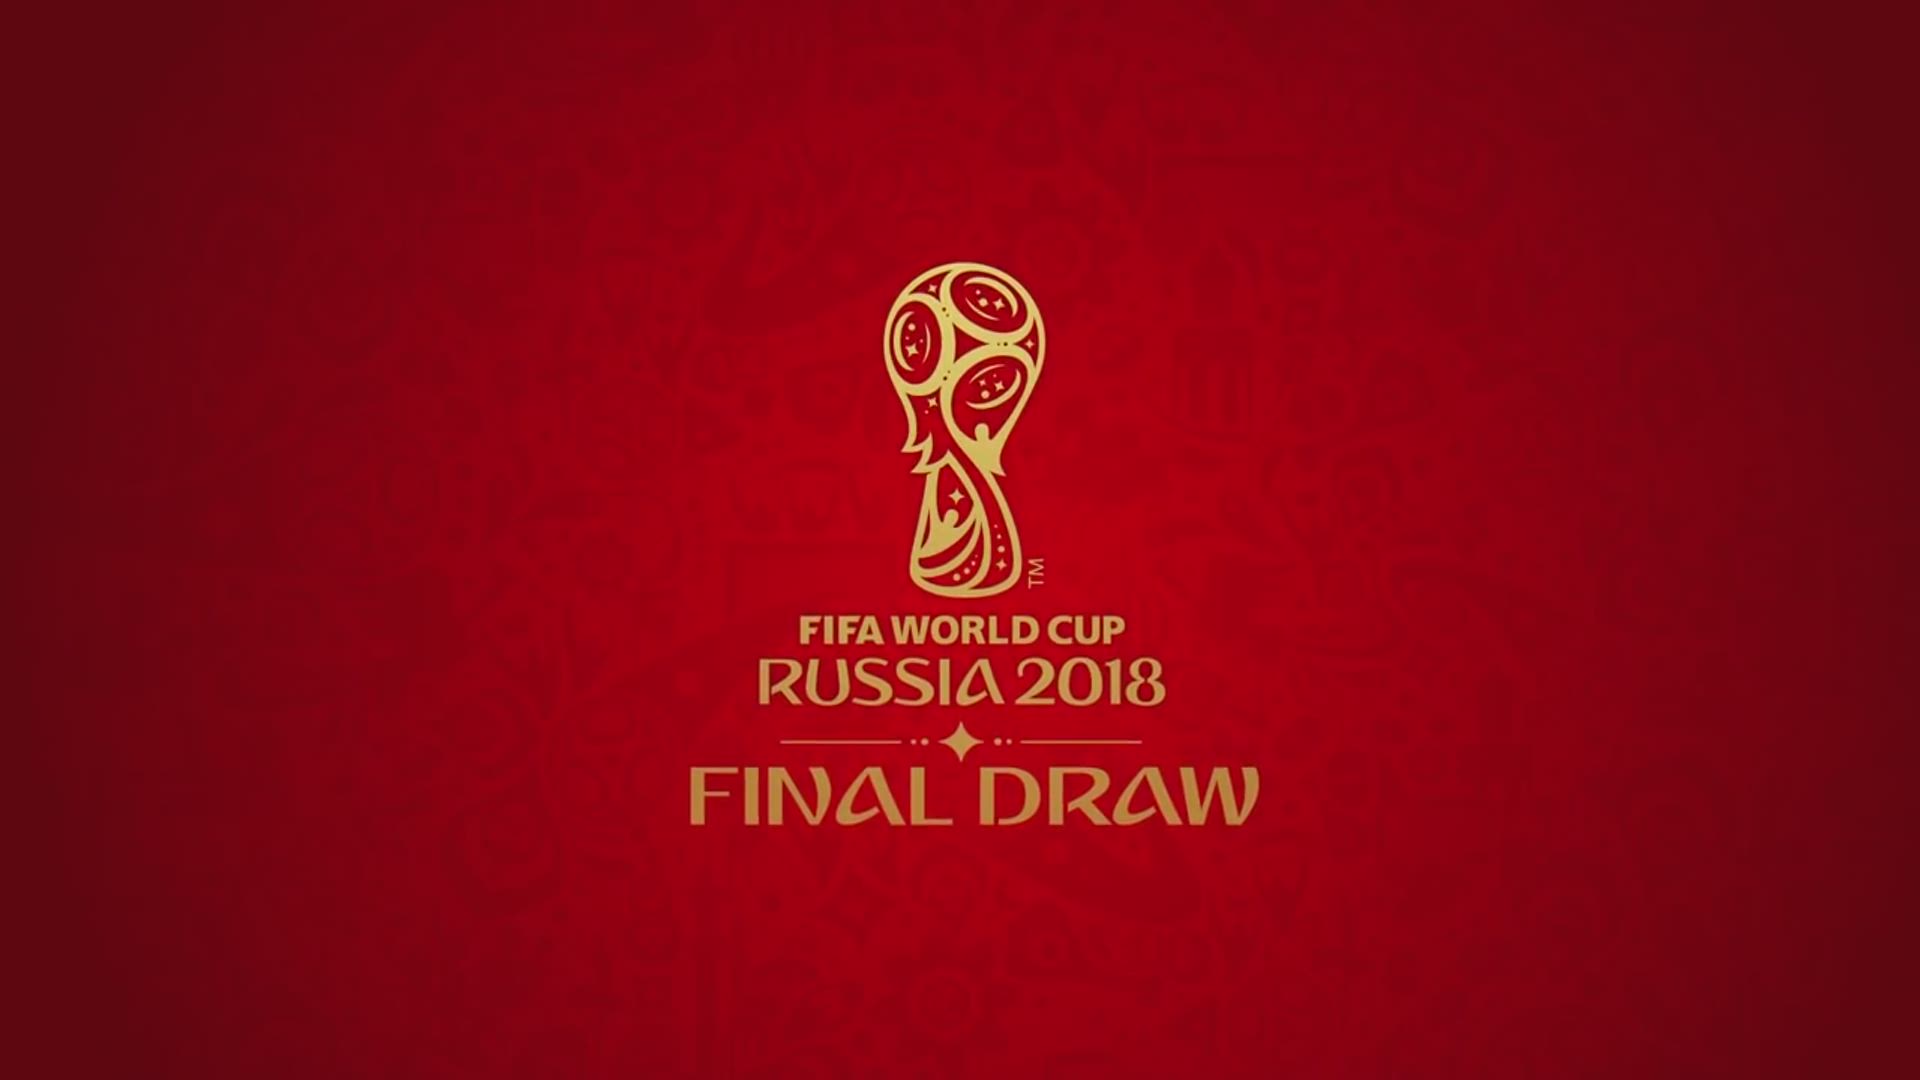 Final draw